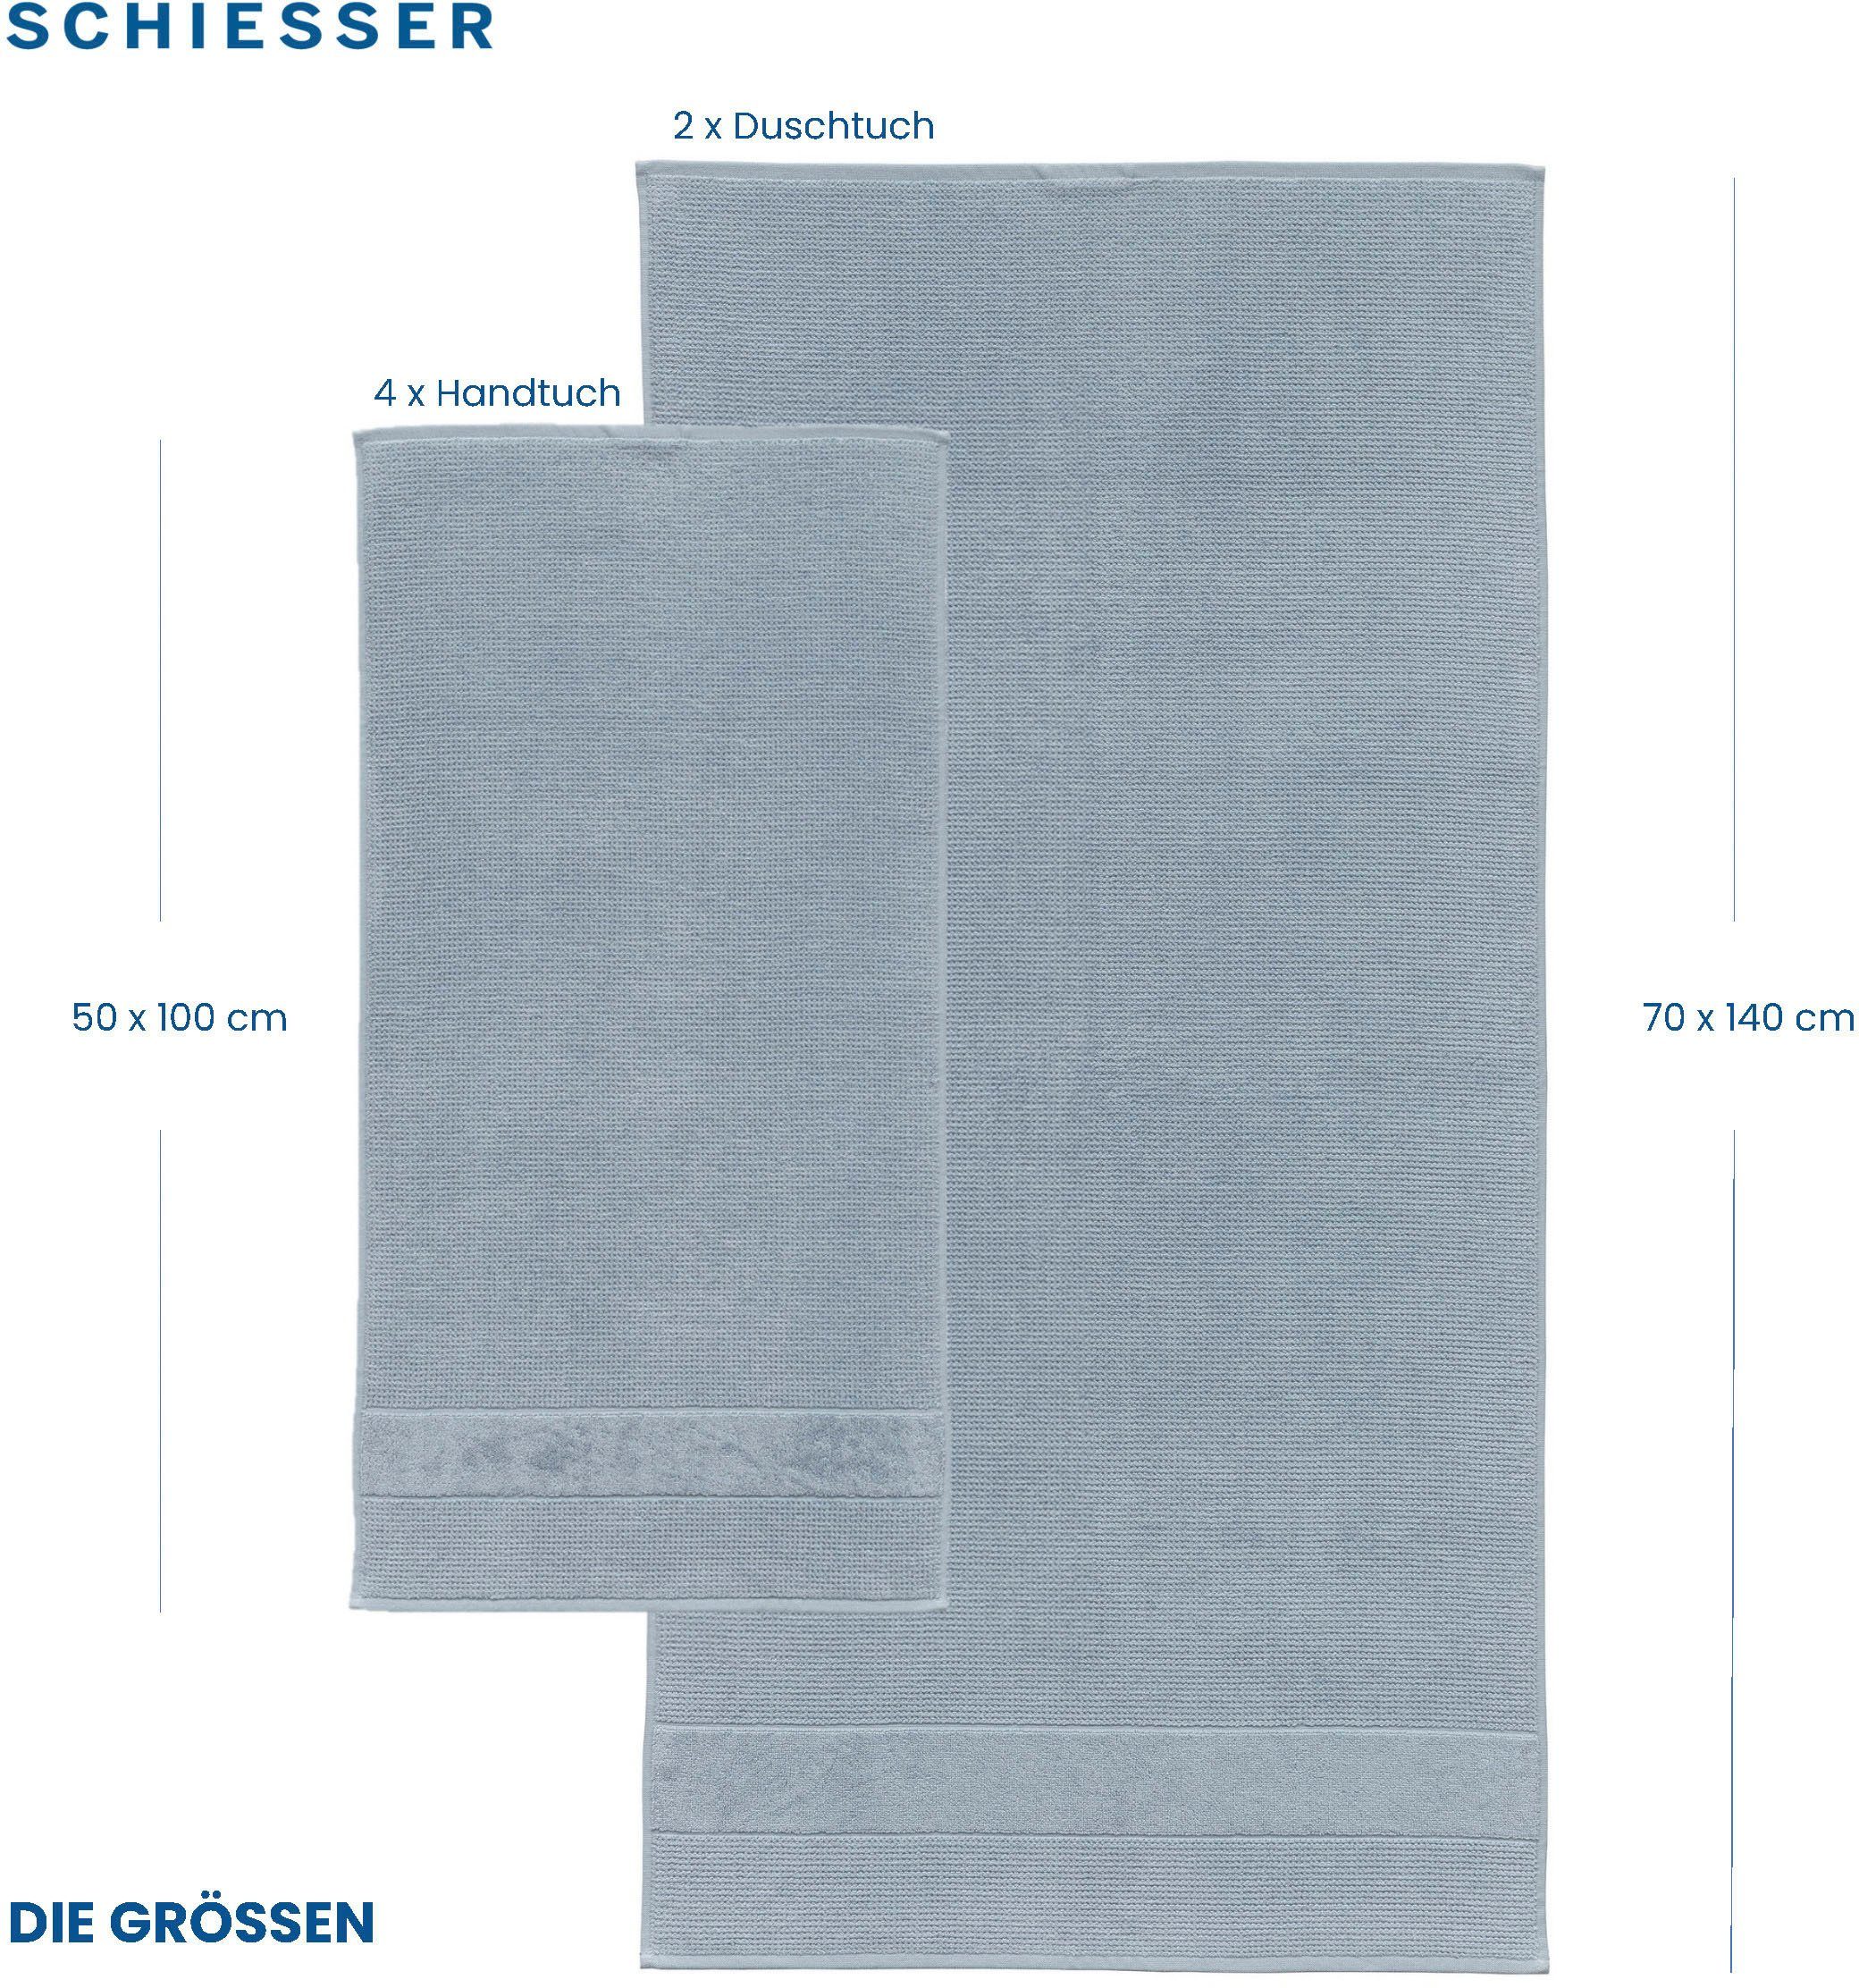 MADE Set Baumwolle, 100% Rauchblau Handtücher Reiskorn-Optik, Turin 4er OEKO-TEX®-zertifiziert im Frottier Schiesser aus by (2-St), GREEN IN